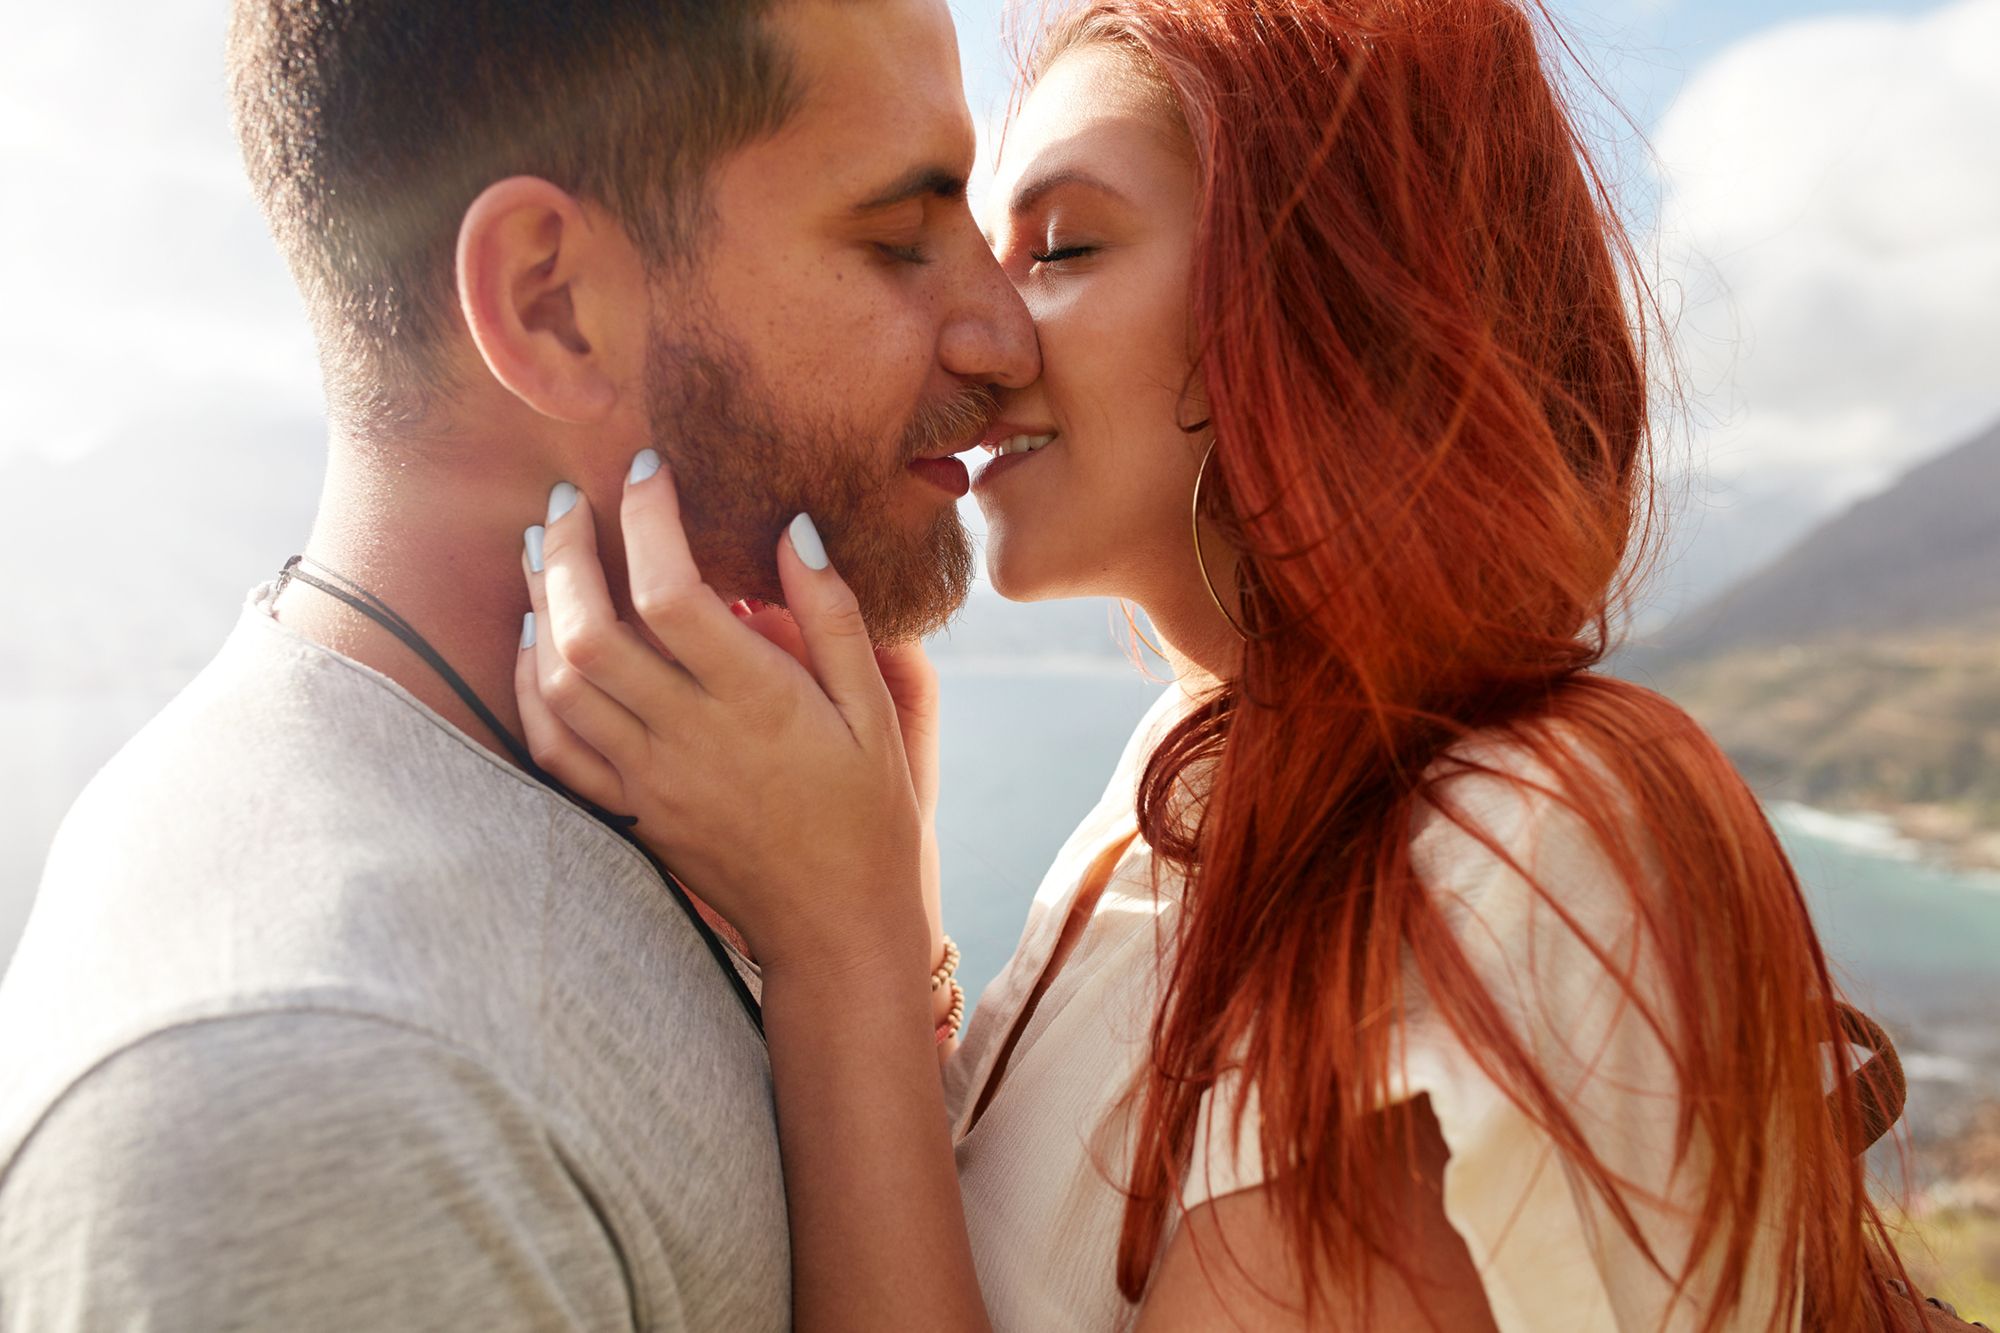 Mann und Frau küssen sich vor einer Landschaft